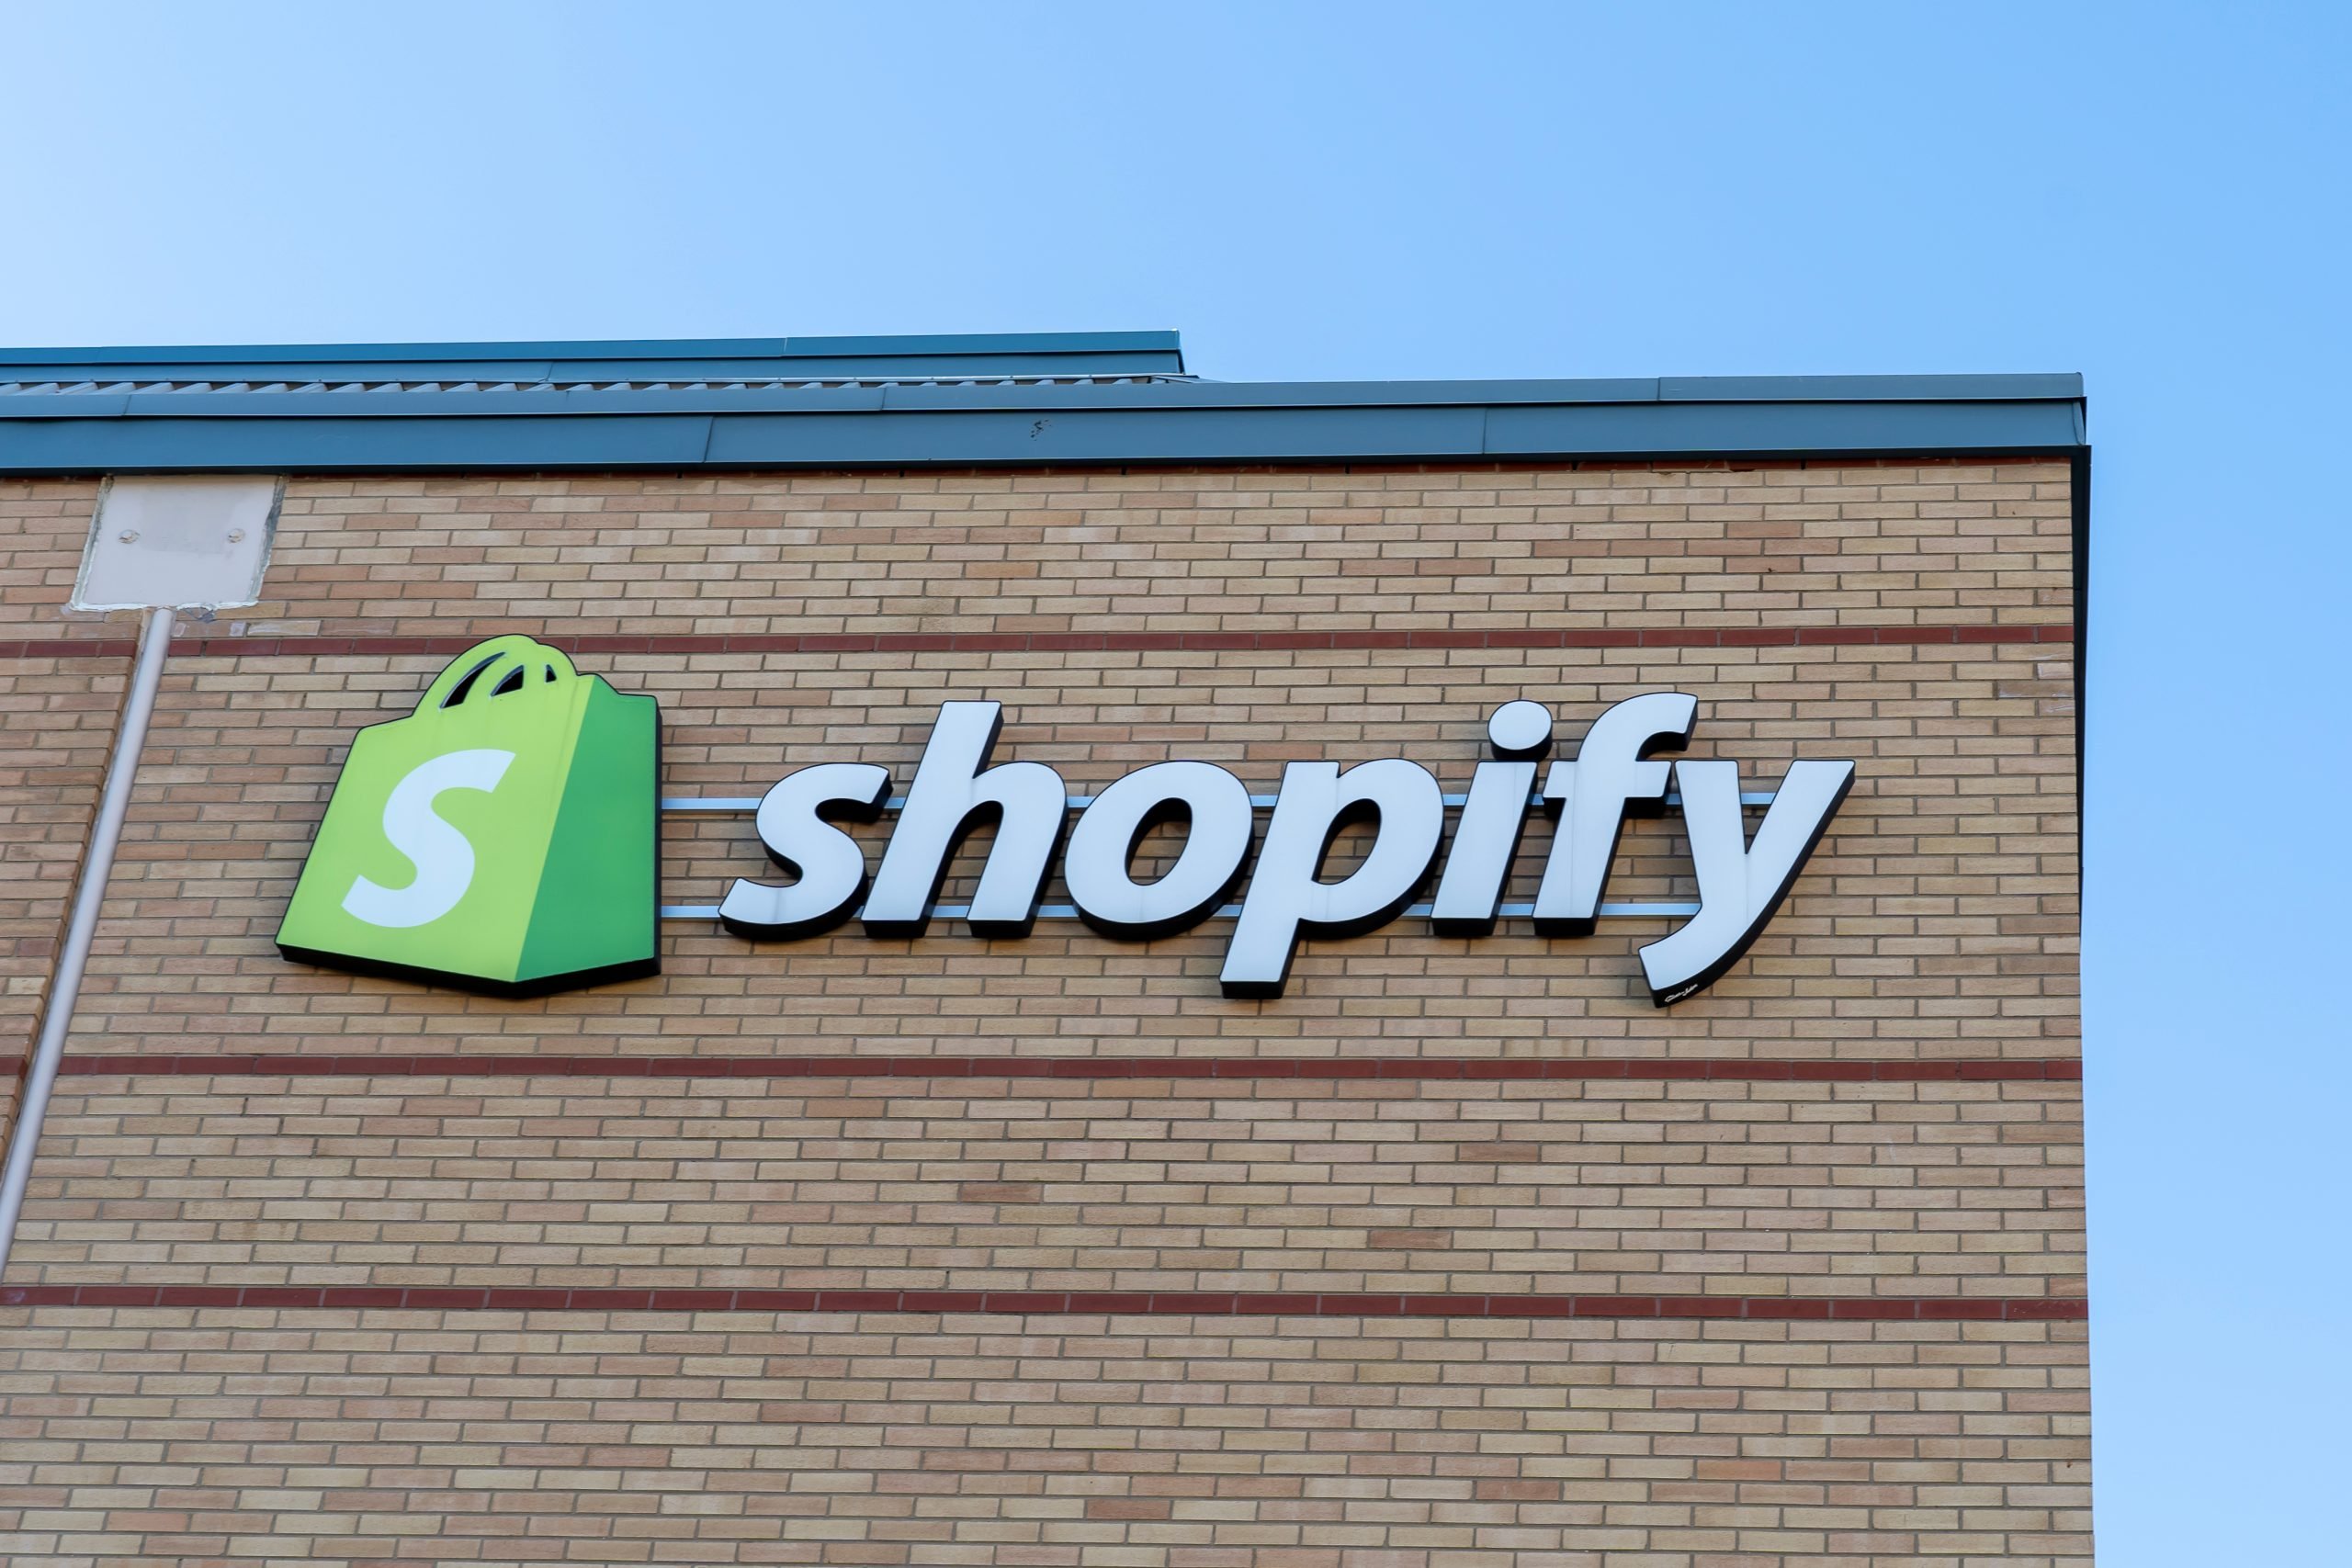 shopify-mulai-memungkinkan-pelanggan-e-commerce-nya-untuk-menjual-nfts-directly.jpg